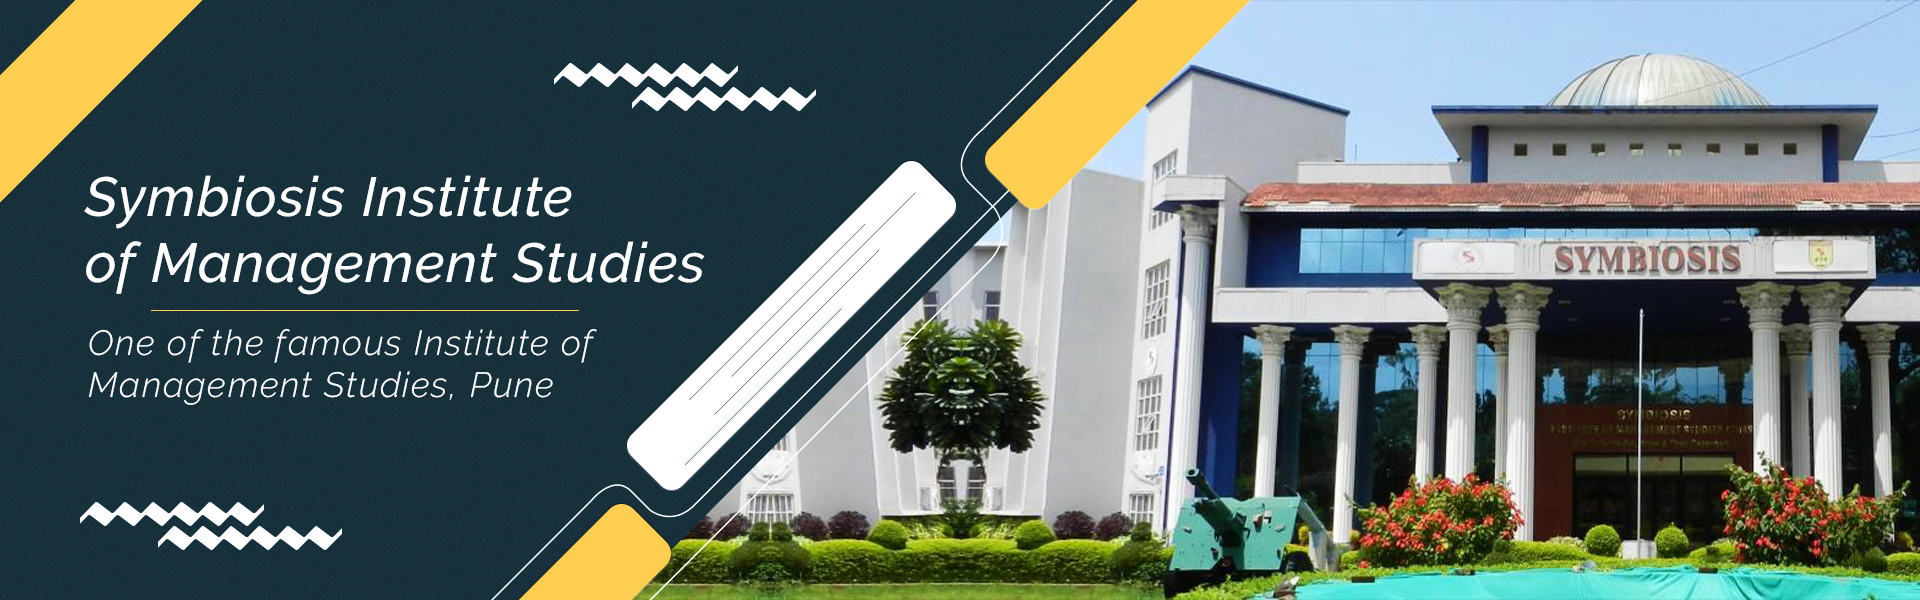 Symbiosis Institute of Management Studies (SIMS) Pune